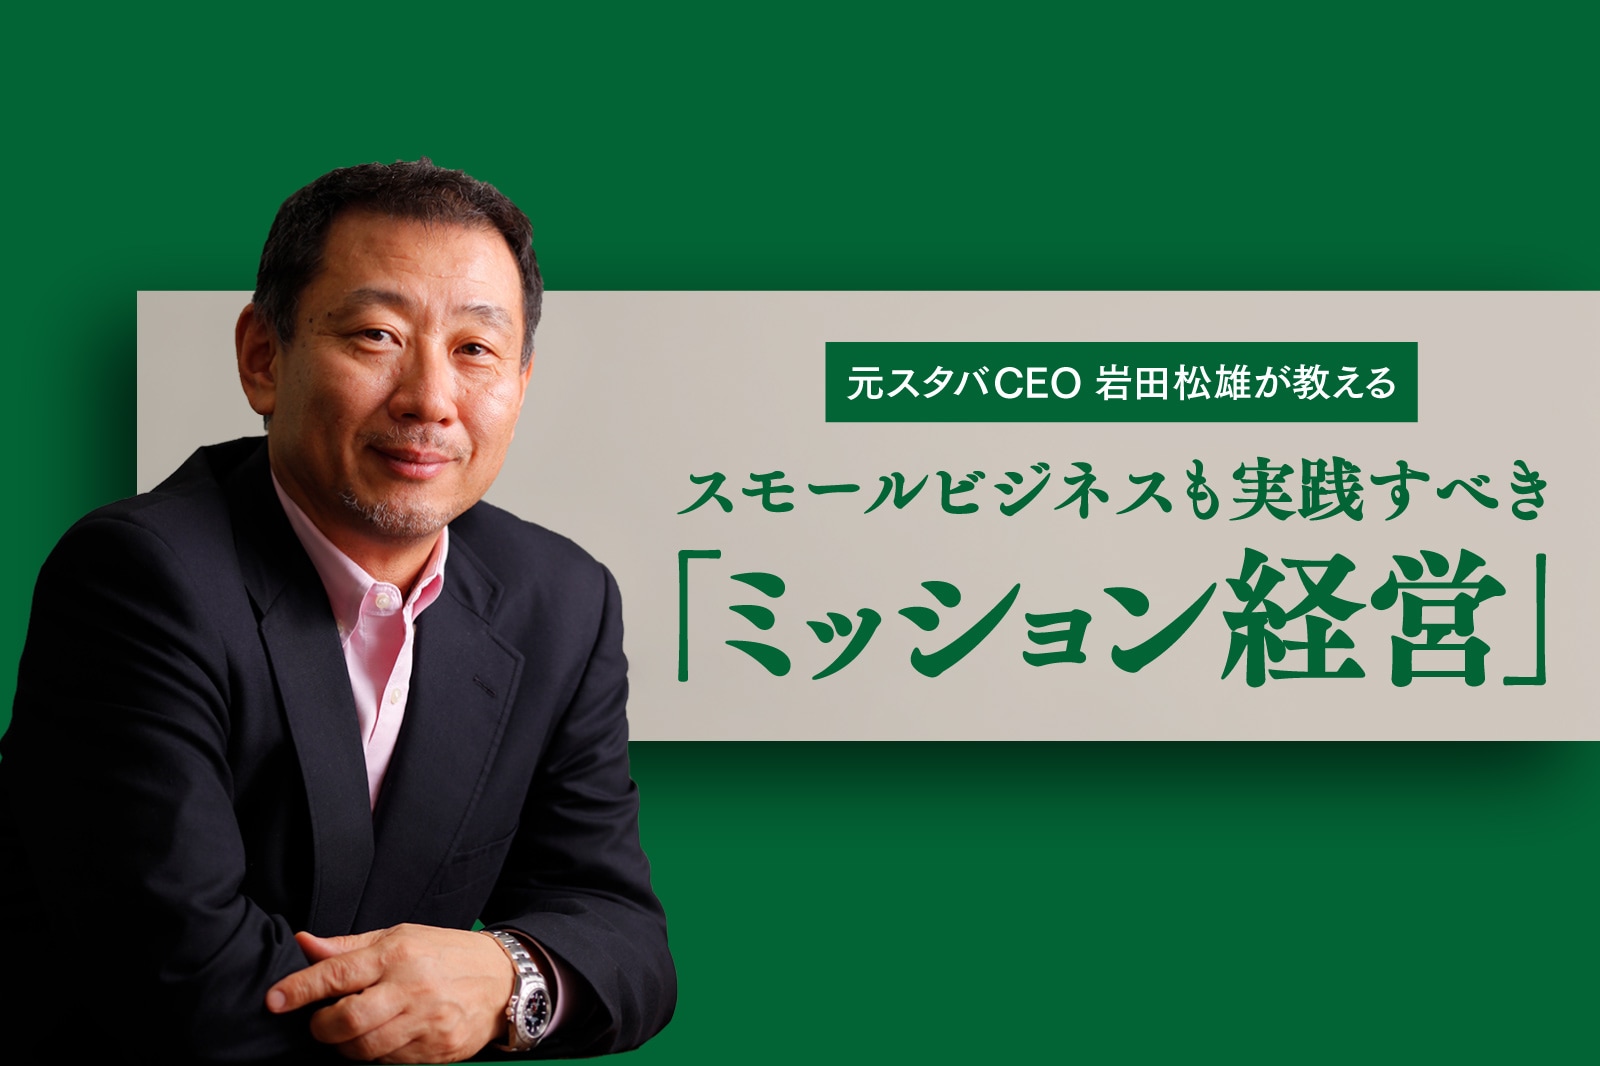 元スタバCEO岩田松雄が教える、スモールビジネスも実践すべき